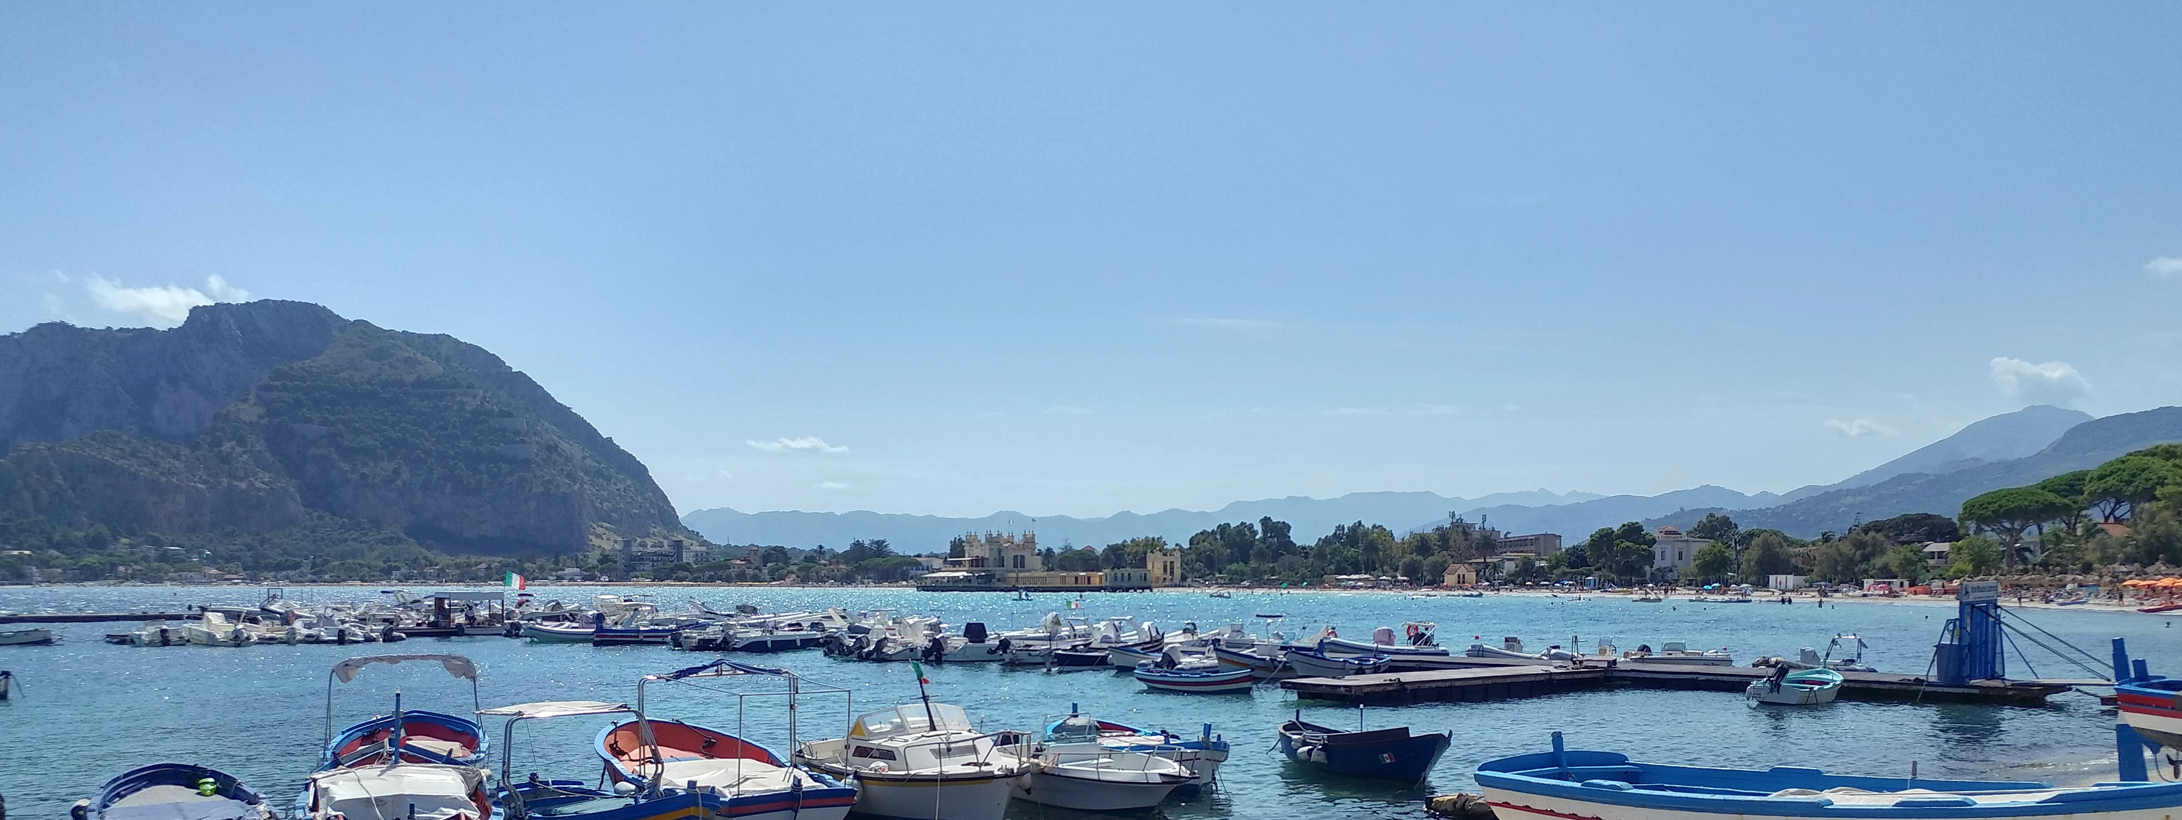 Mondello - bahía vista desde el puerto de pescadores